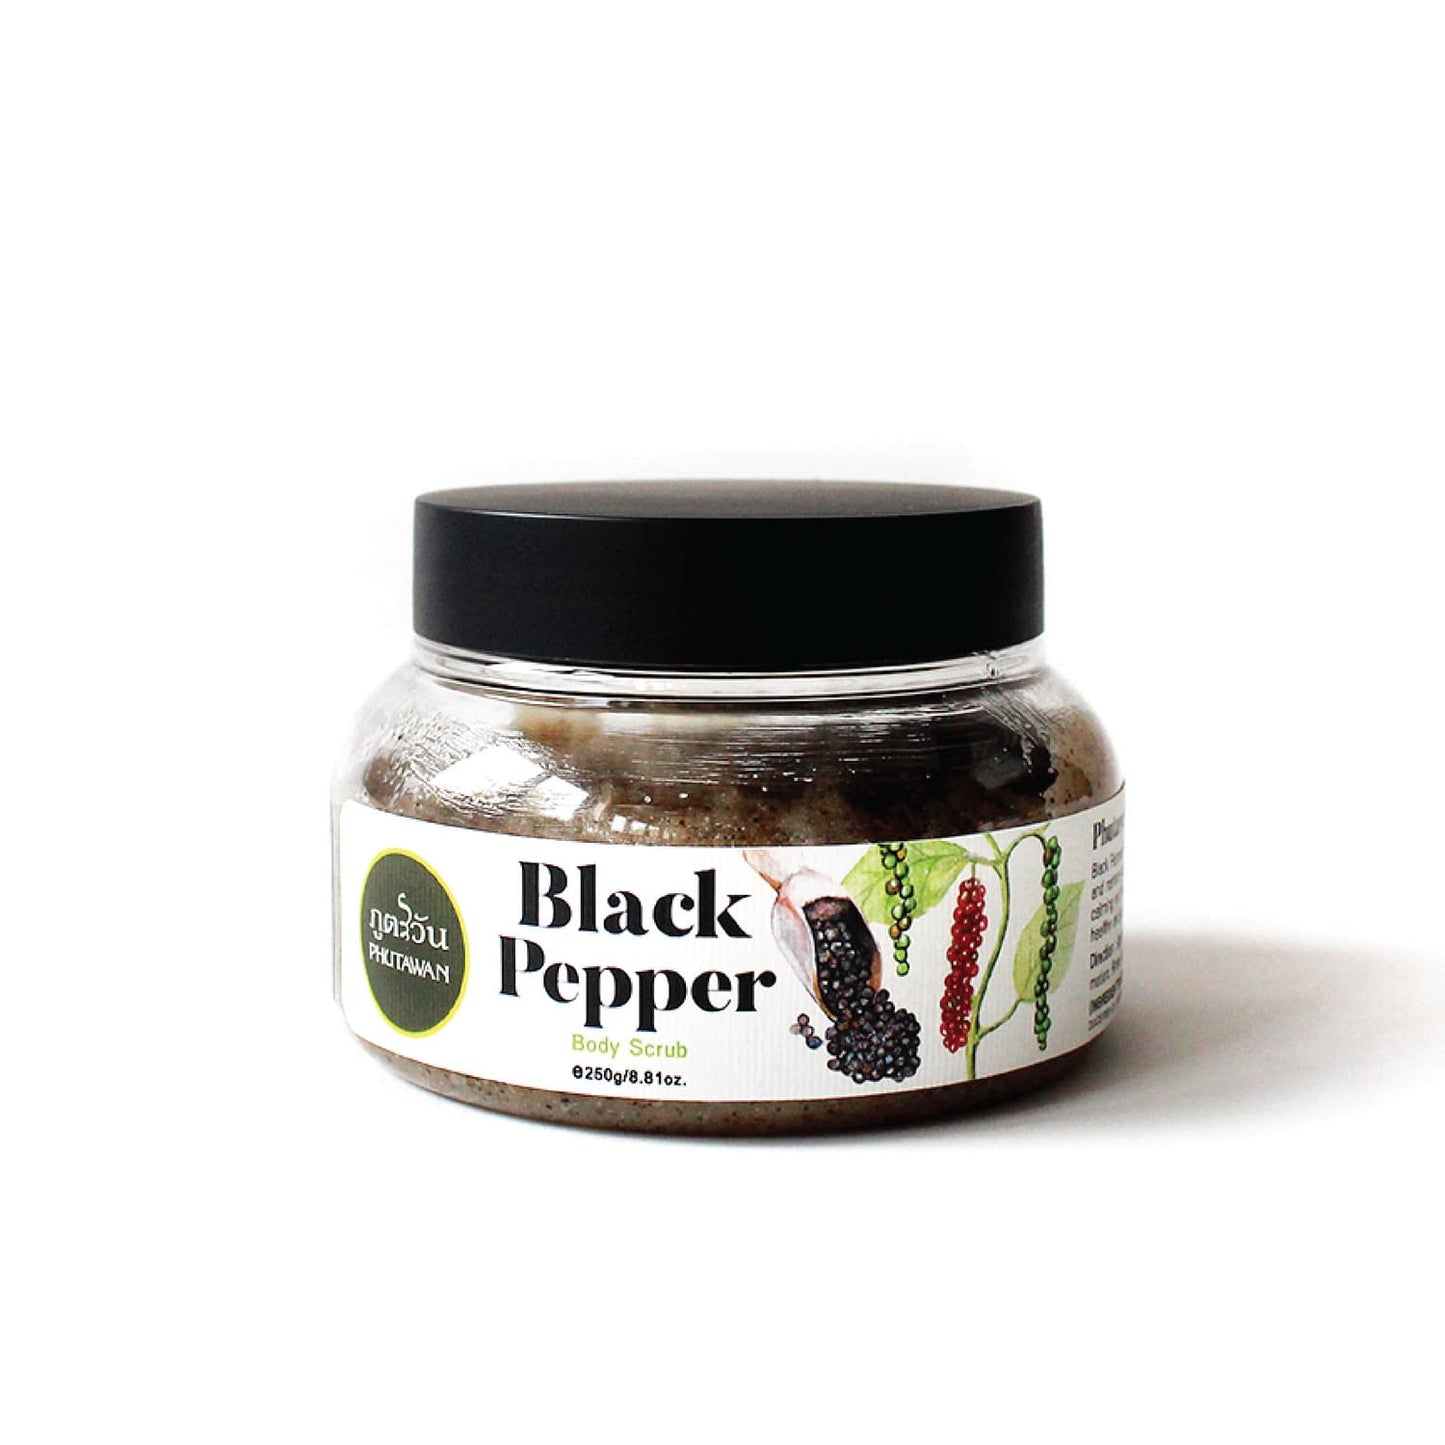 Black Pepper Body Scrub